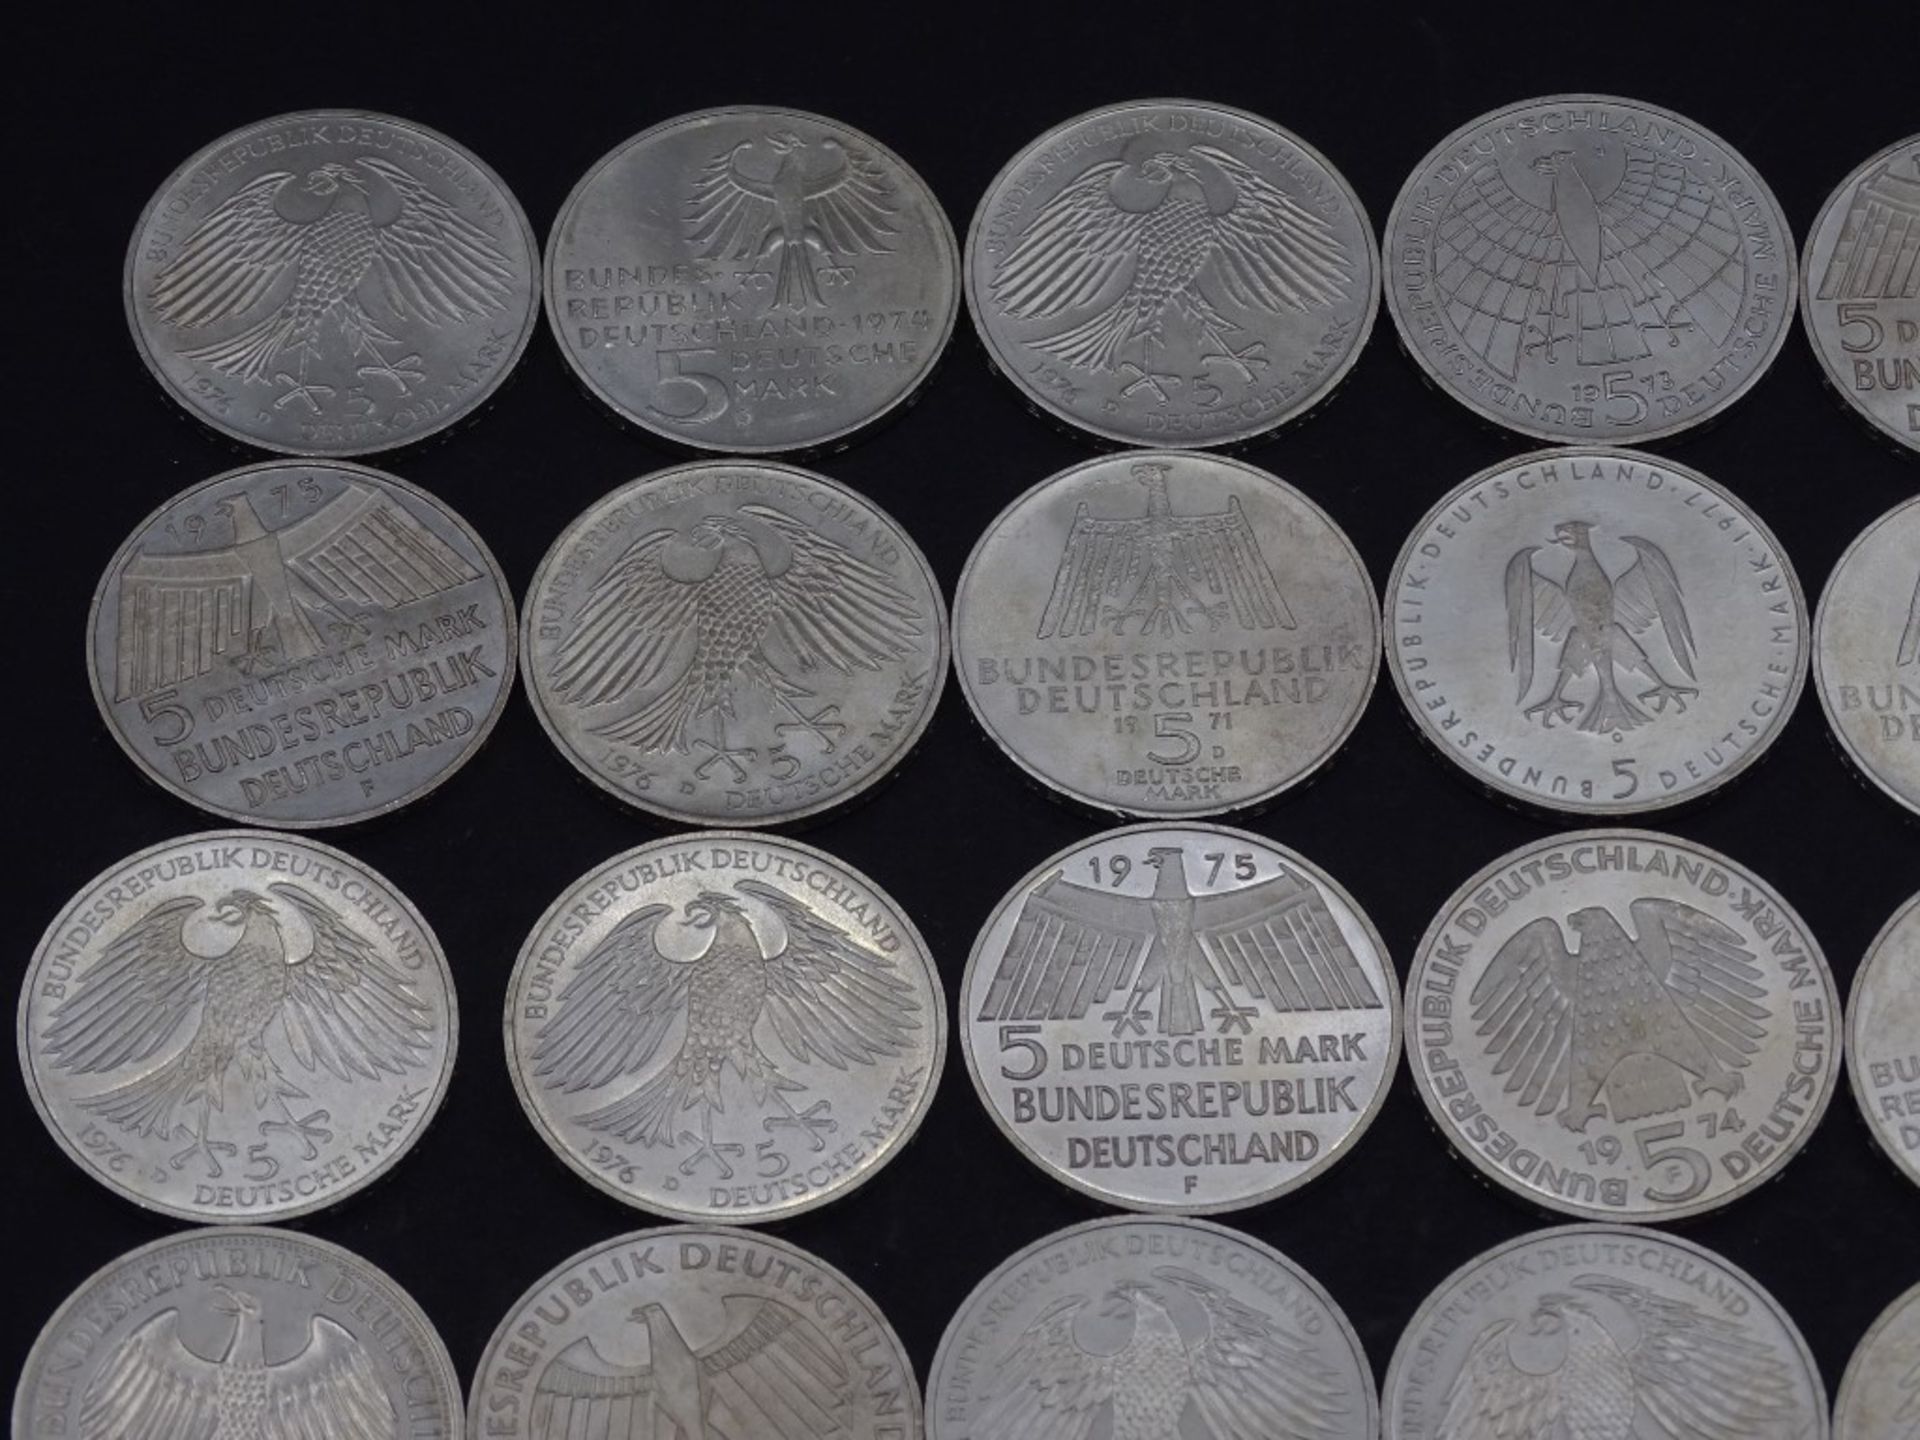 40x 5 DM Münzen,Silber,ges. 200 Deutsche Mar - Bild 2 aus 10